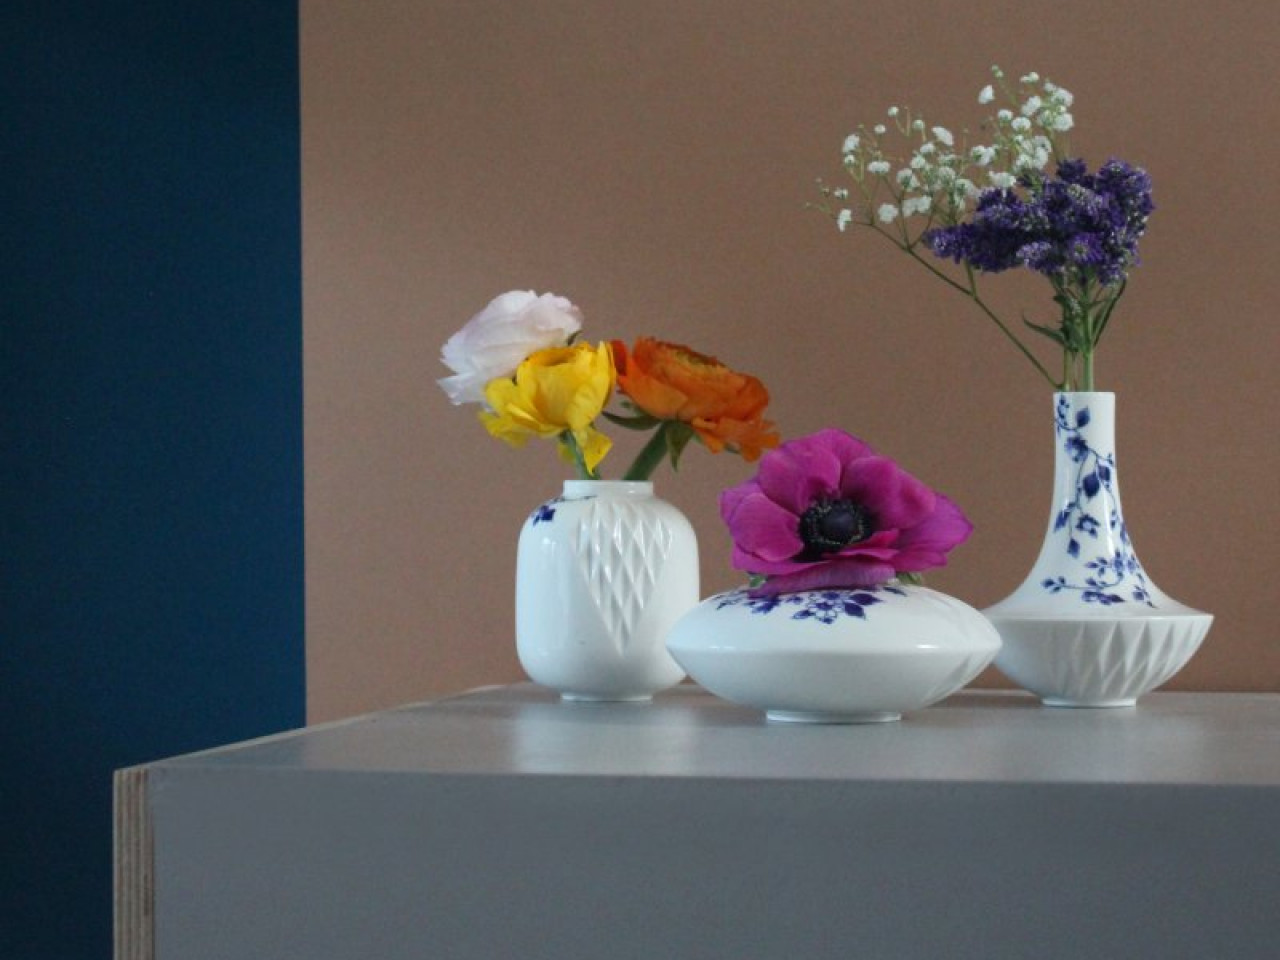 Blauw Vouw vazen set van 3 met verse bloemen ontworpen door Romy Kuhne Heinen Delfts Blauw